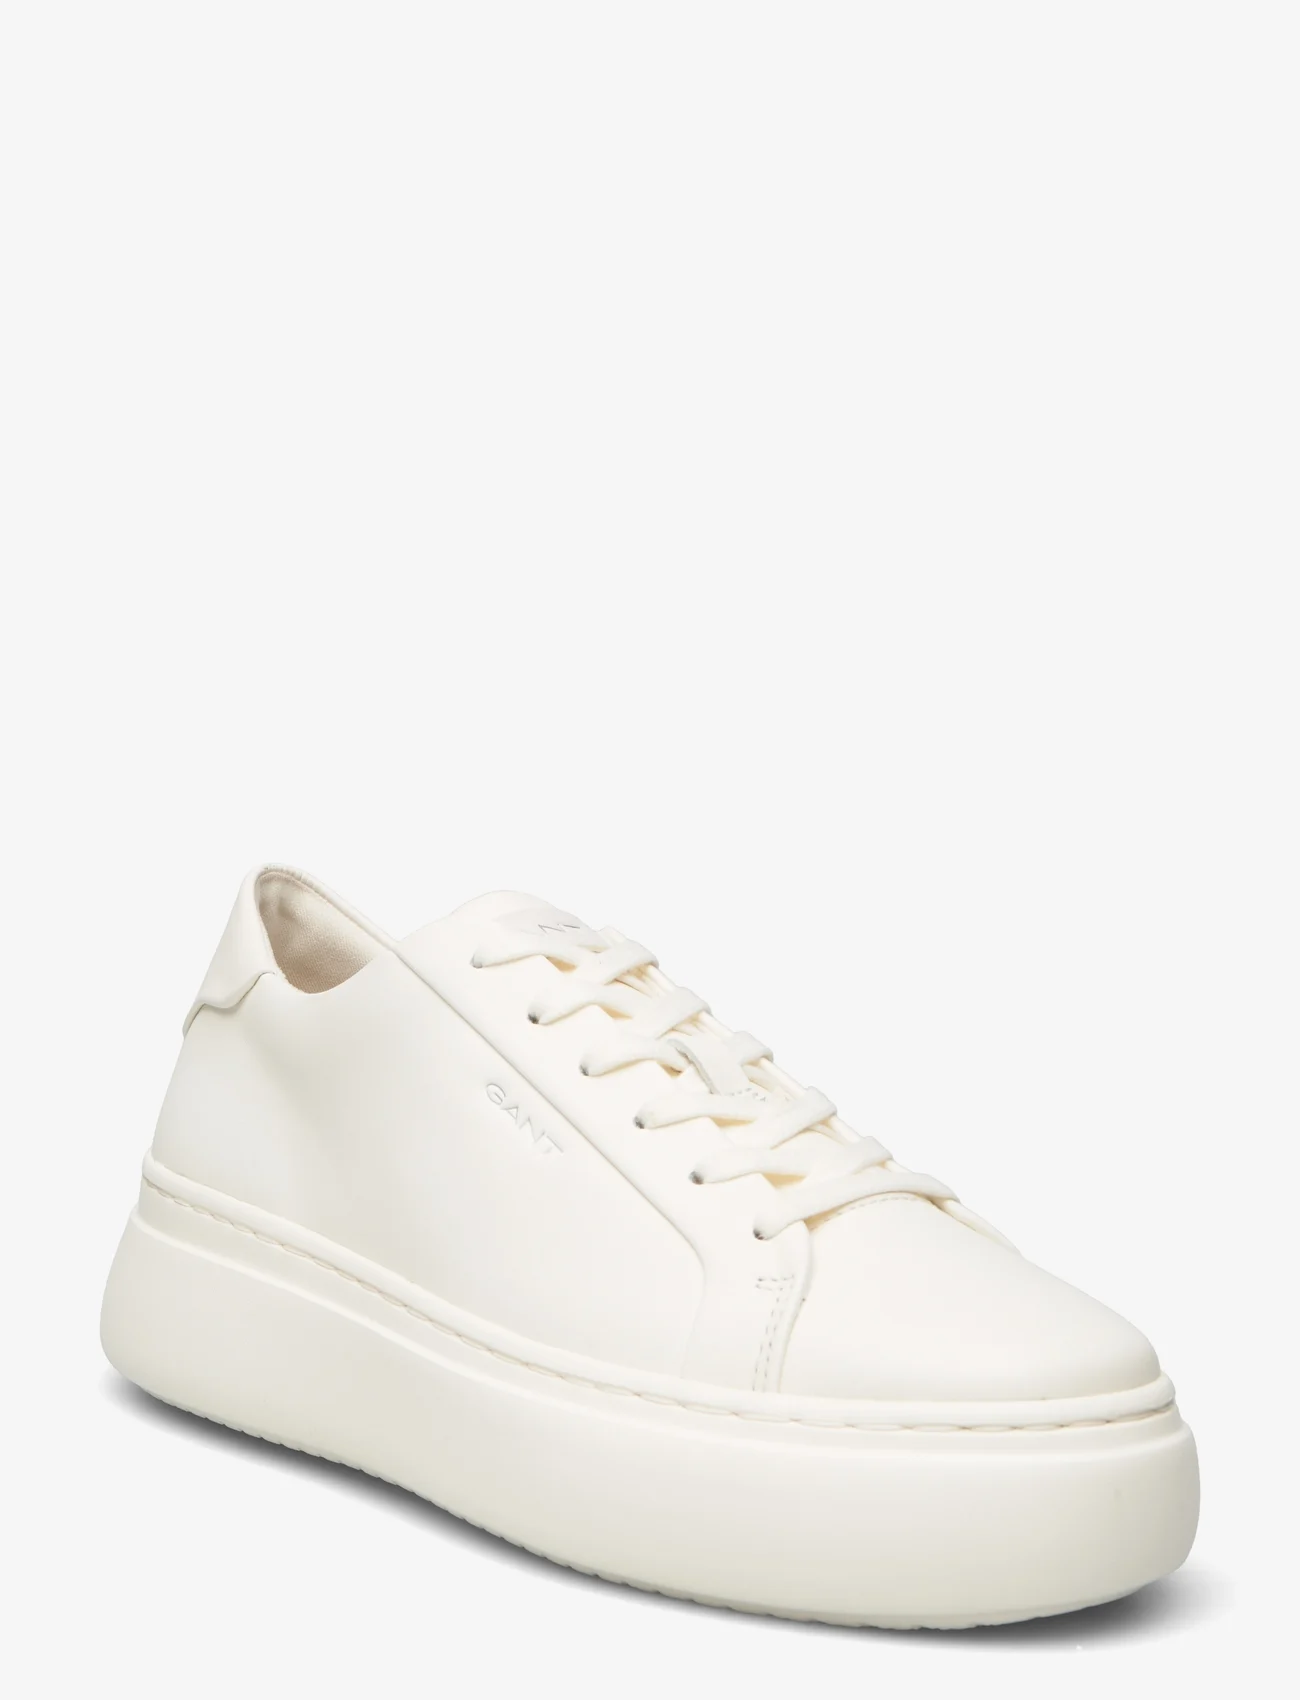 GANT - Jennise Sneaker - low top sneakers - white - 0